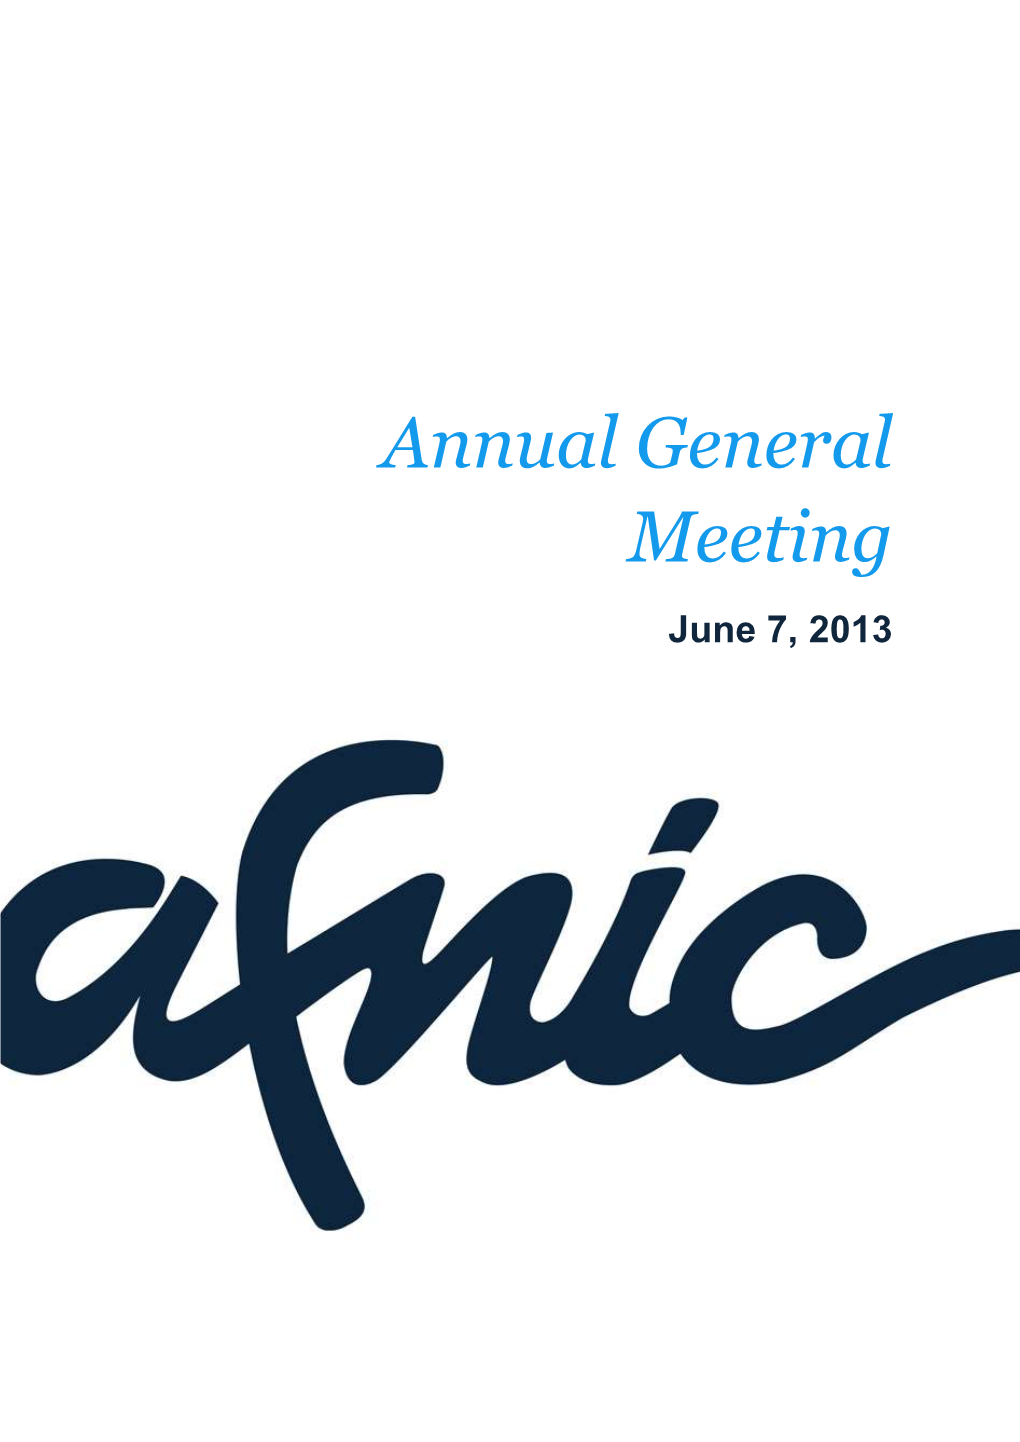 Annual General Meeting June 7, 2013